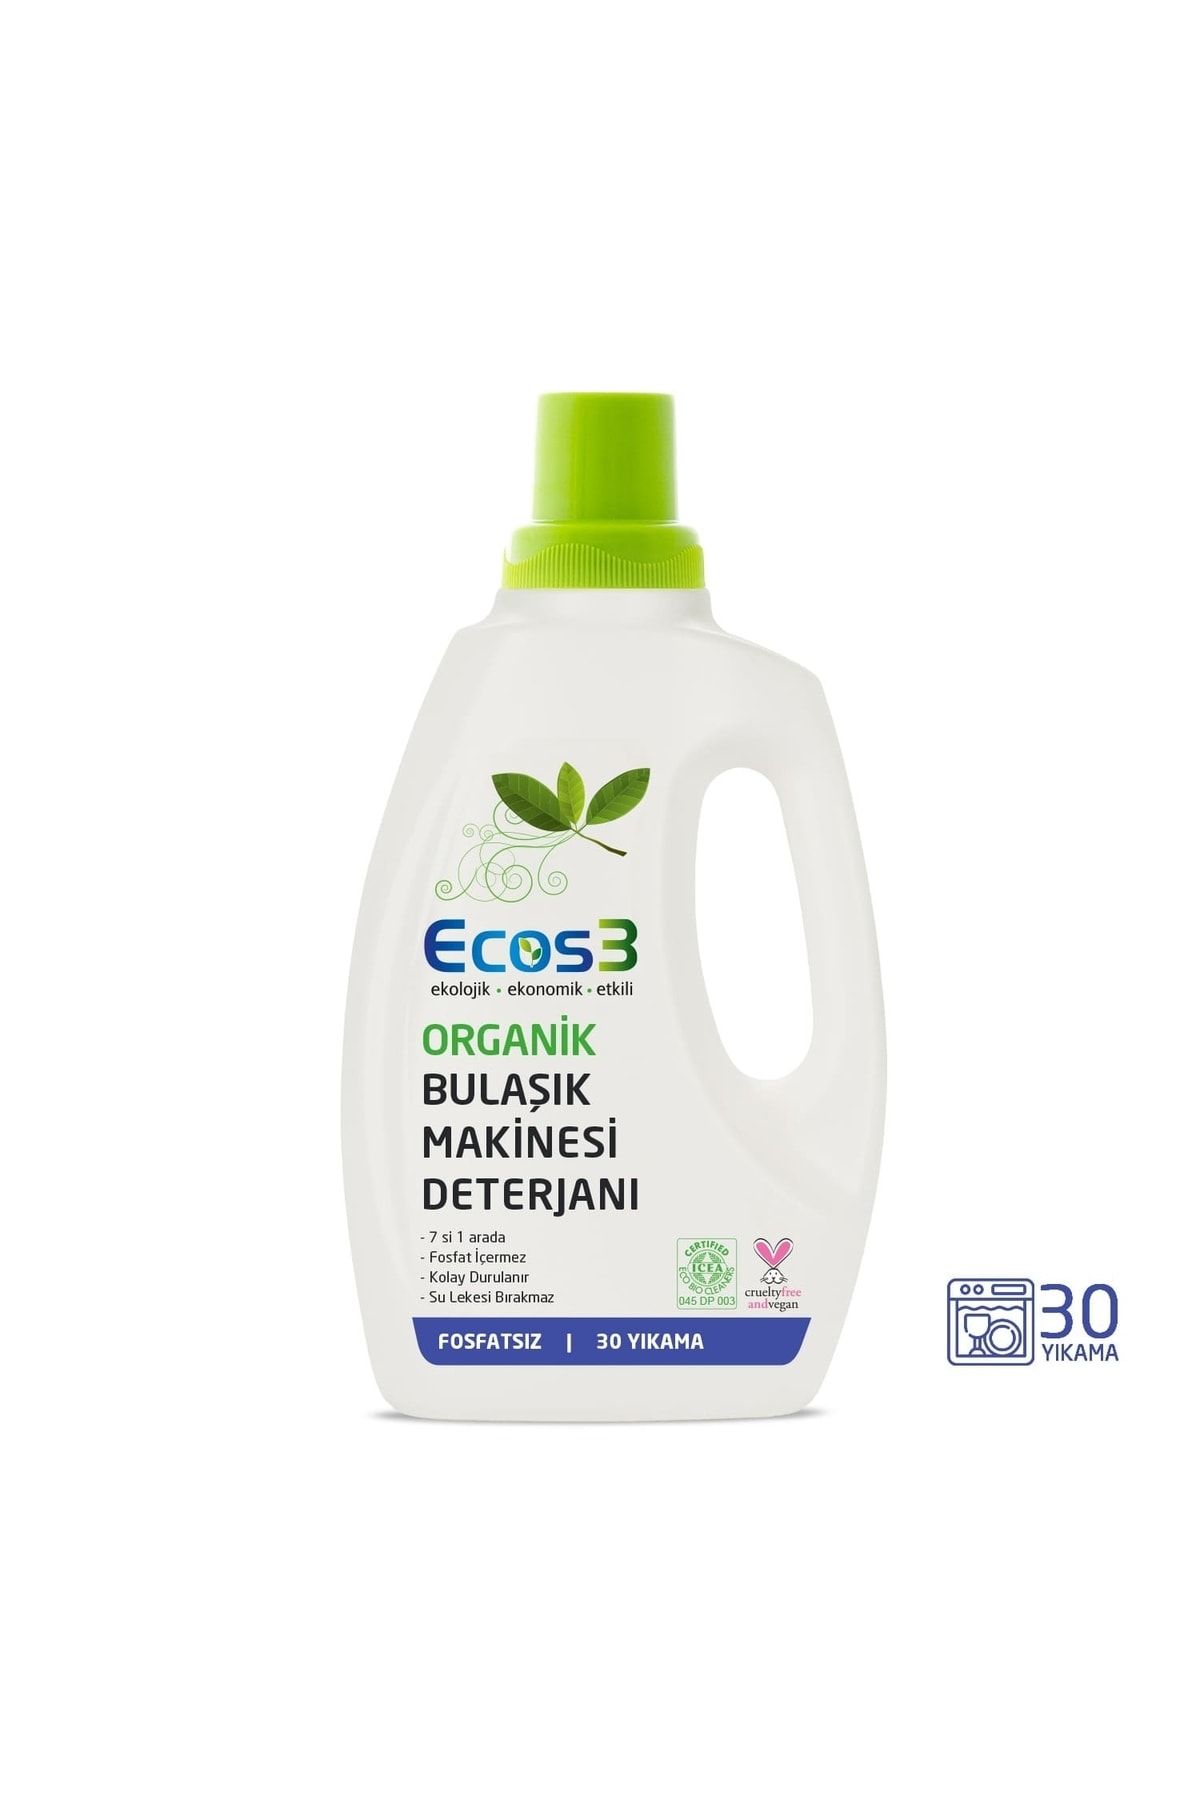 Ecos3 Vegan Ekolojik Organik Bulaşık Makinesi Deterjanı 750 Ml - 30 Yıkama